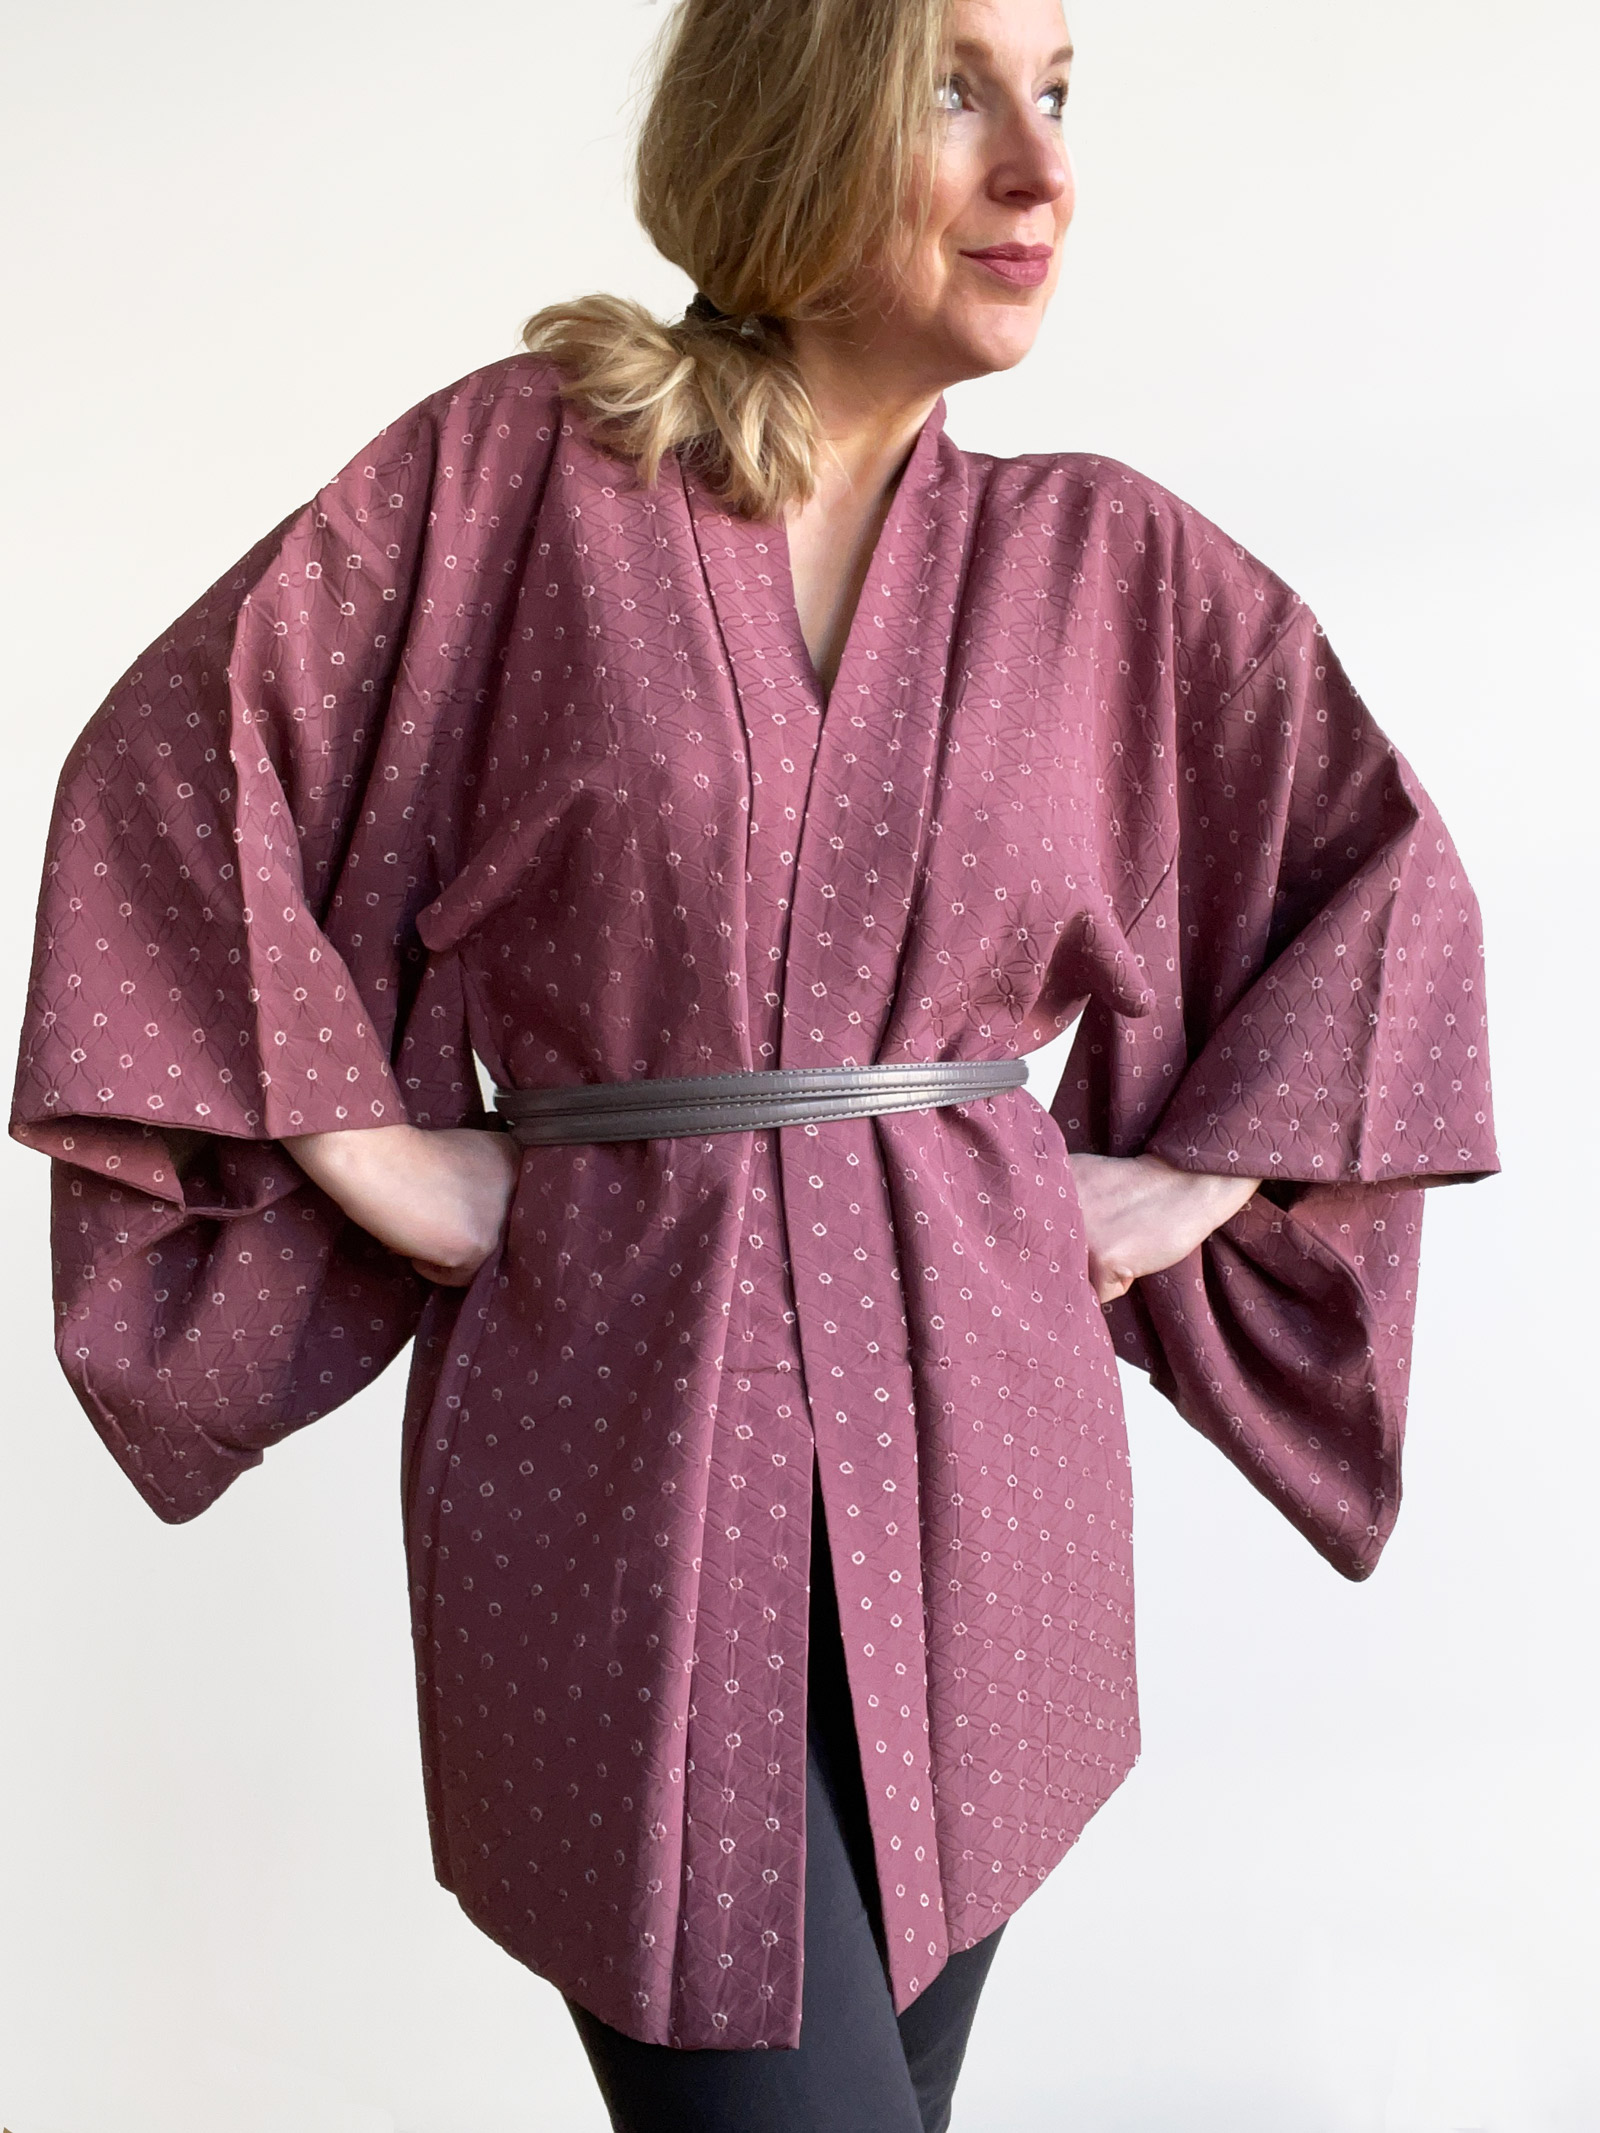 Shizu – patterned silk Kimono jacket (Haori) in plum color